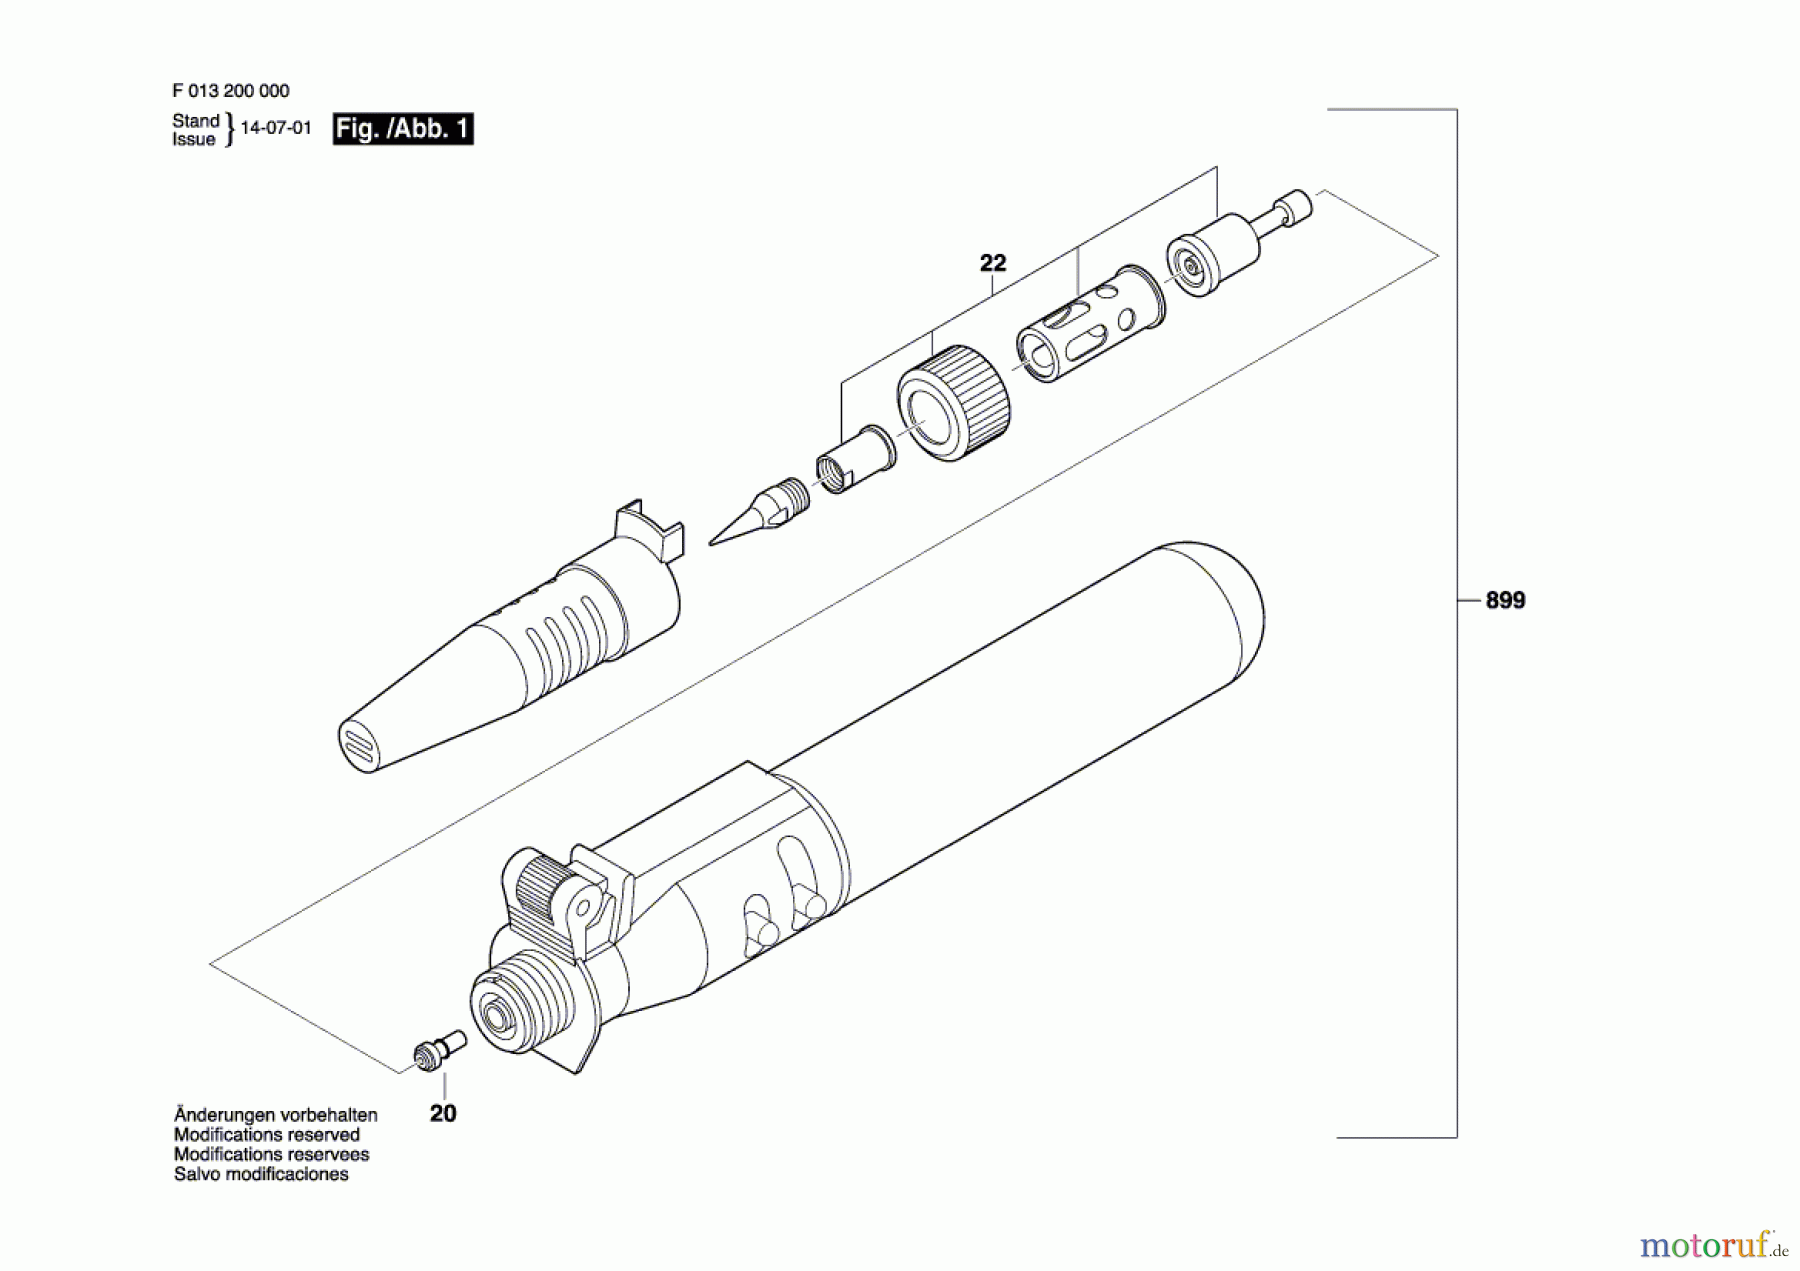  Bosch Werkzeug Gaslöter 2000 Seite 1